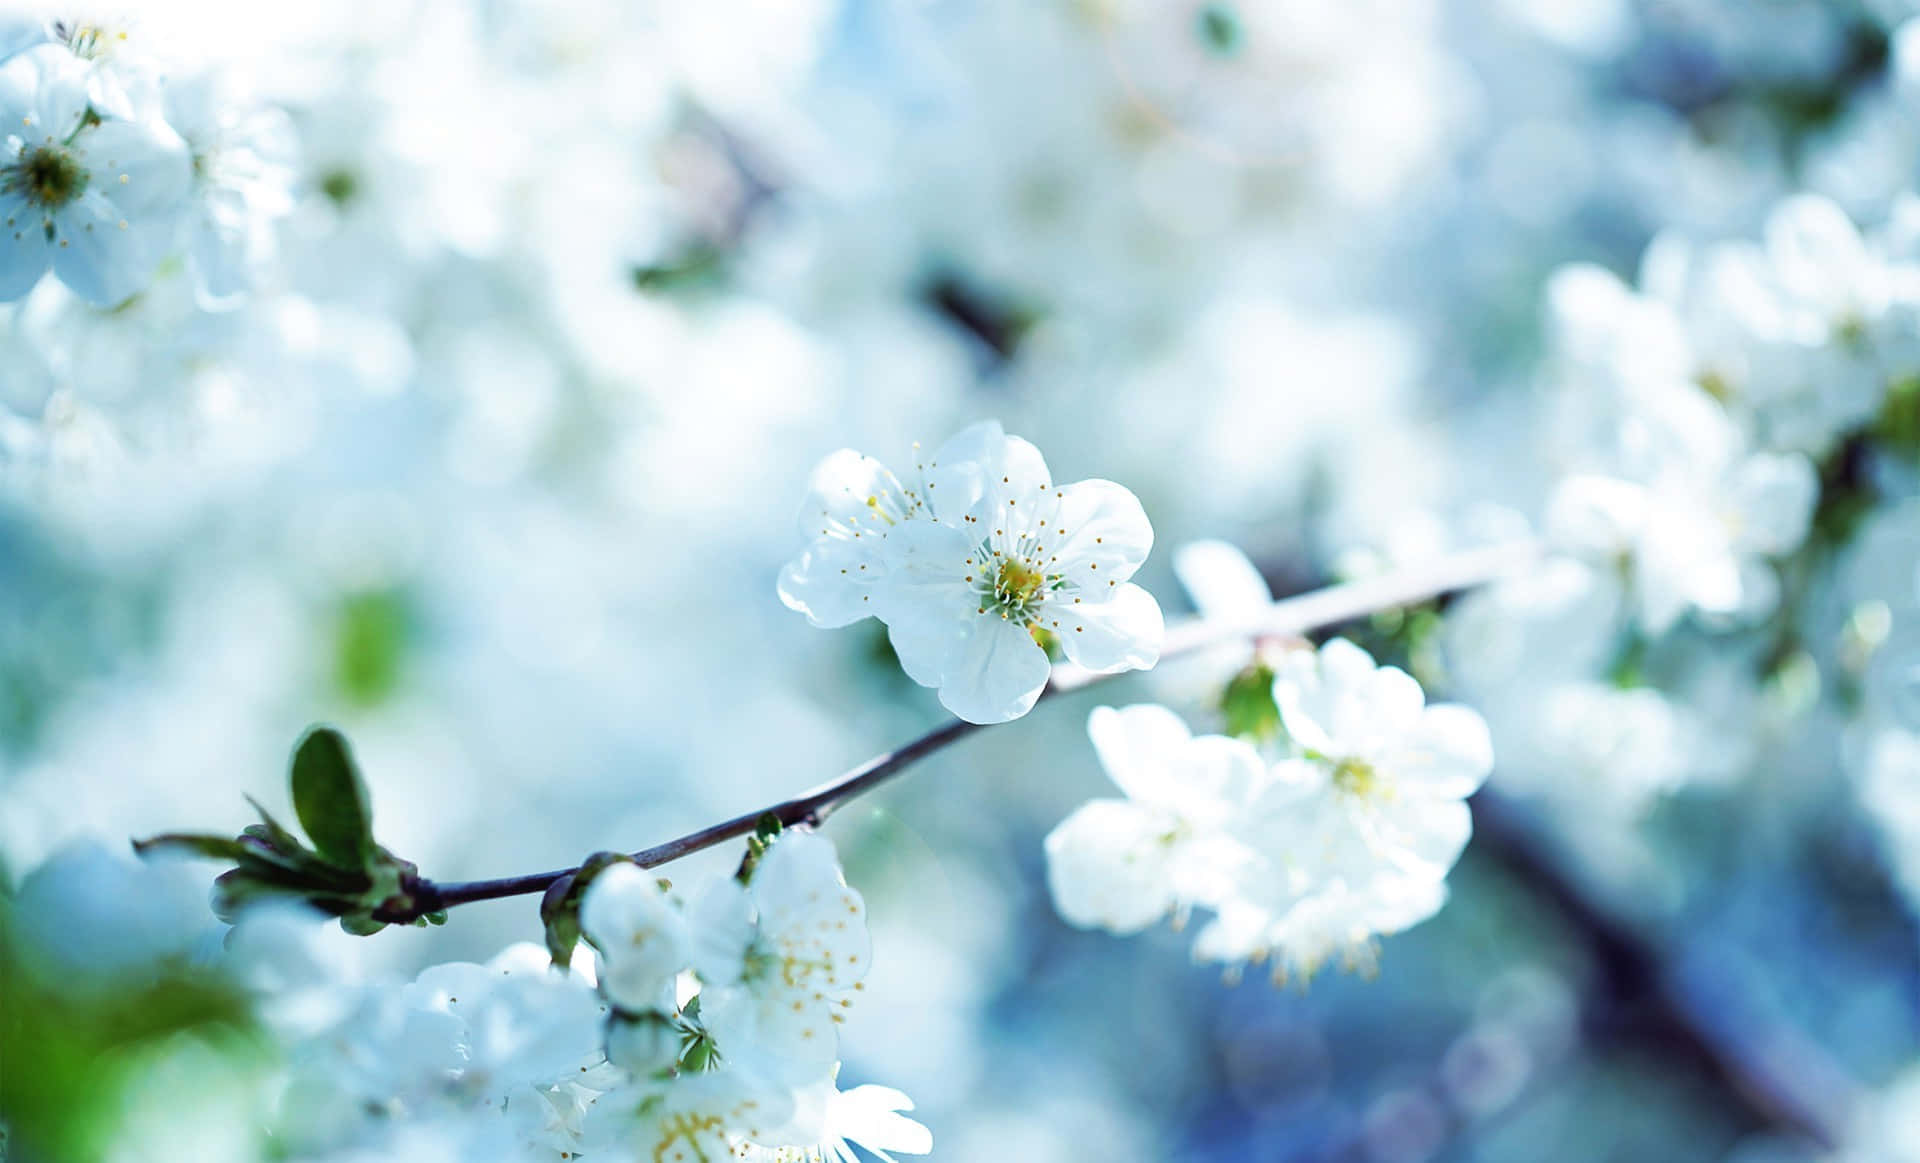 Sartehvide Blomsterblade Åbner Sig For At Afsløre En Skjult Skønhed